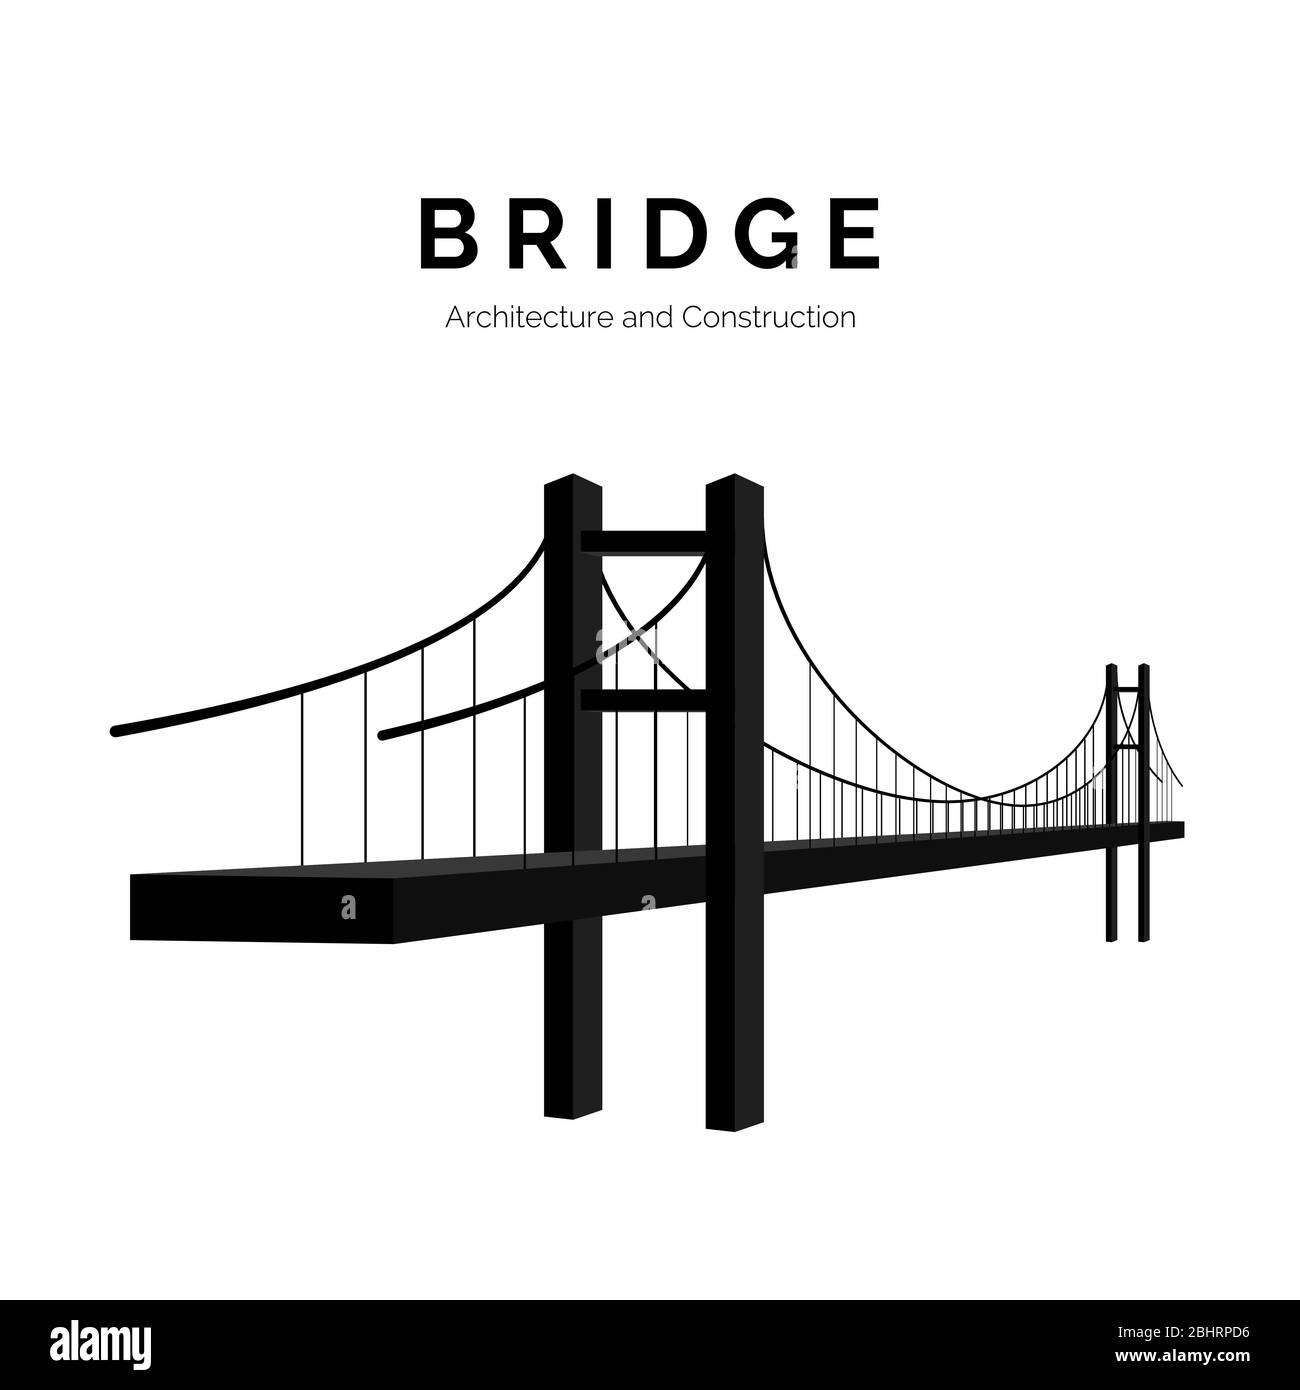 Architettura e costruzioni del ponte. Icona Bridge o logo semplice. Edificio moderno collegato. Illustrazione vettoriale Illustrazione Vettoriale